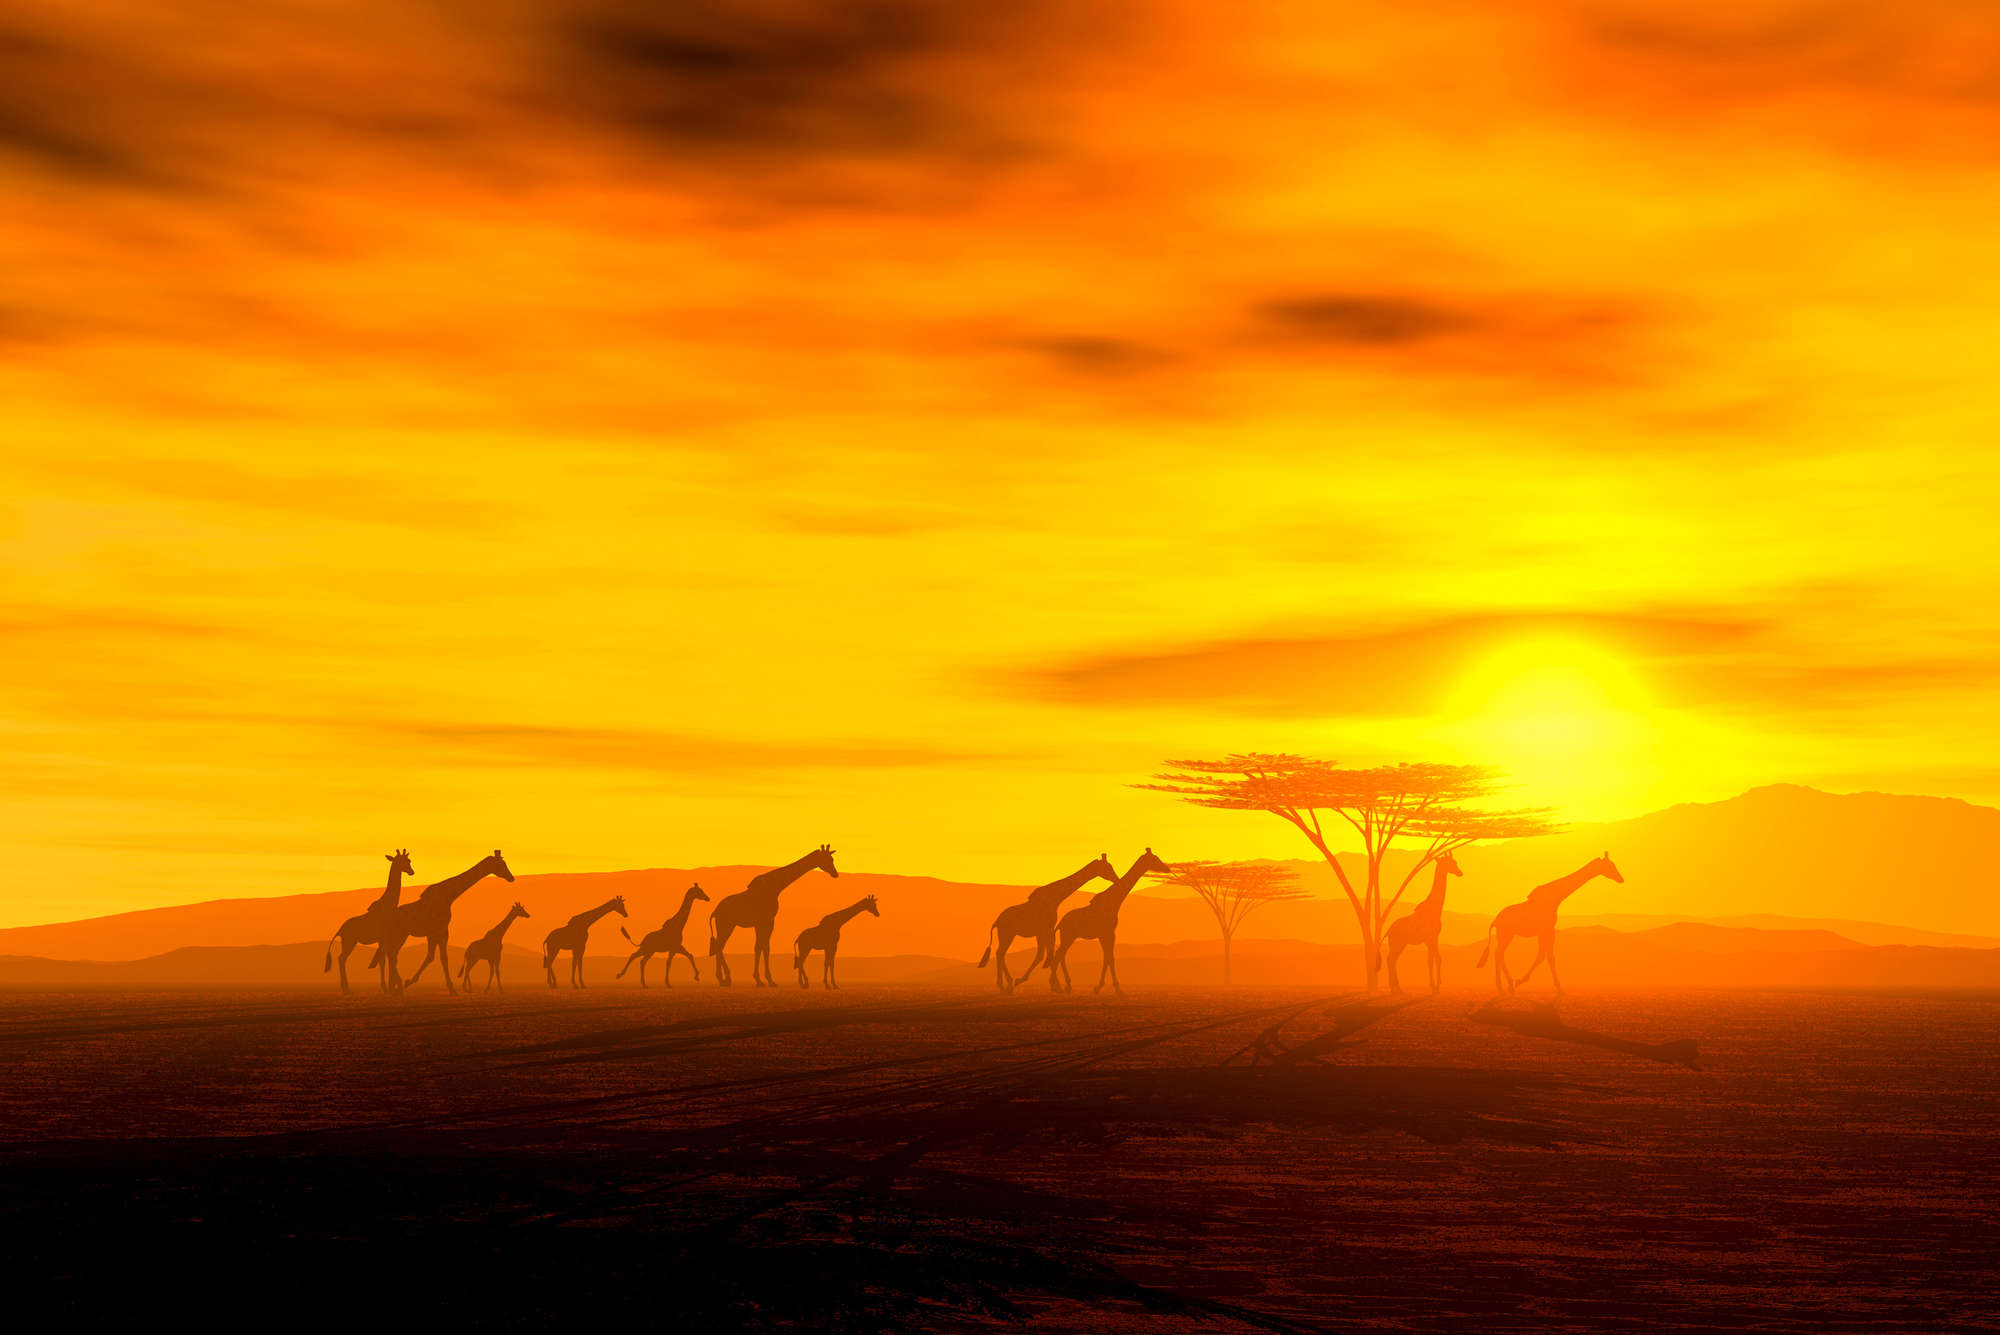             Photo wallpaper Savannah with herd of giraffes - Matt smooth fleece
        